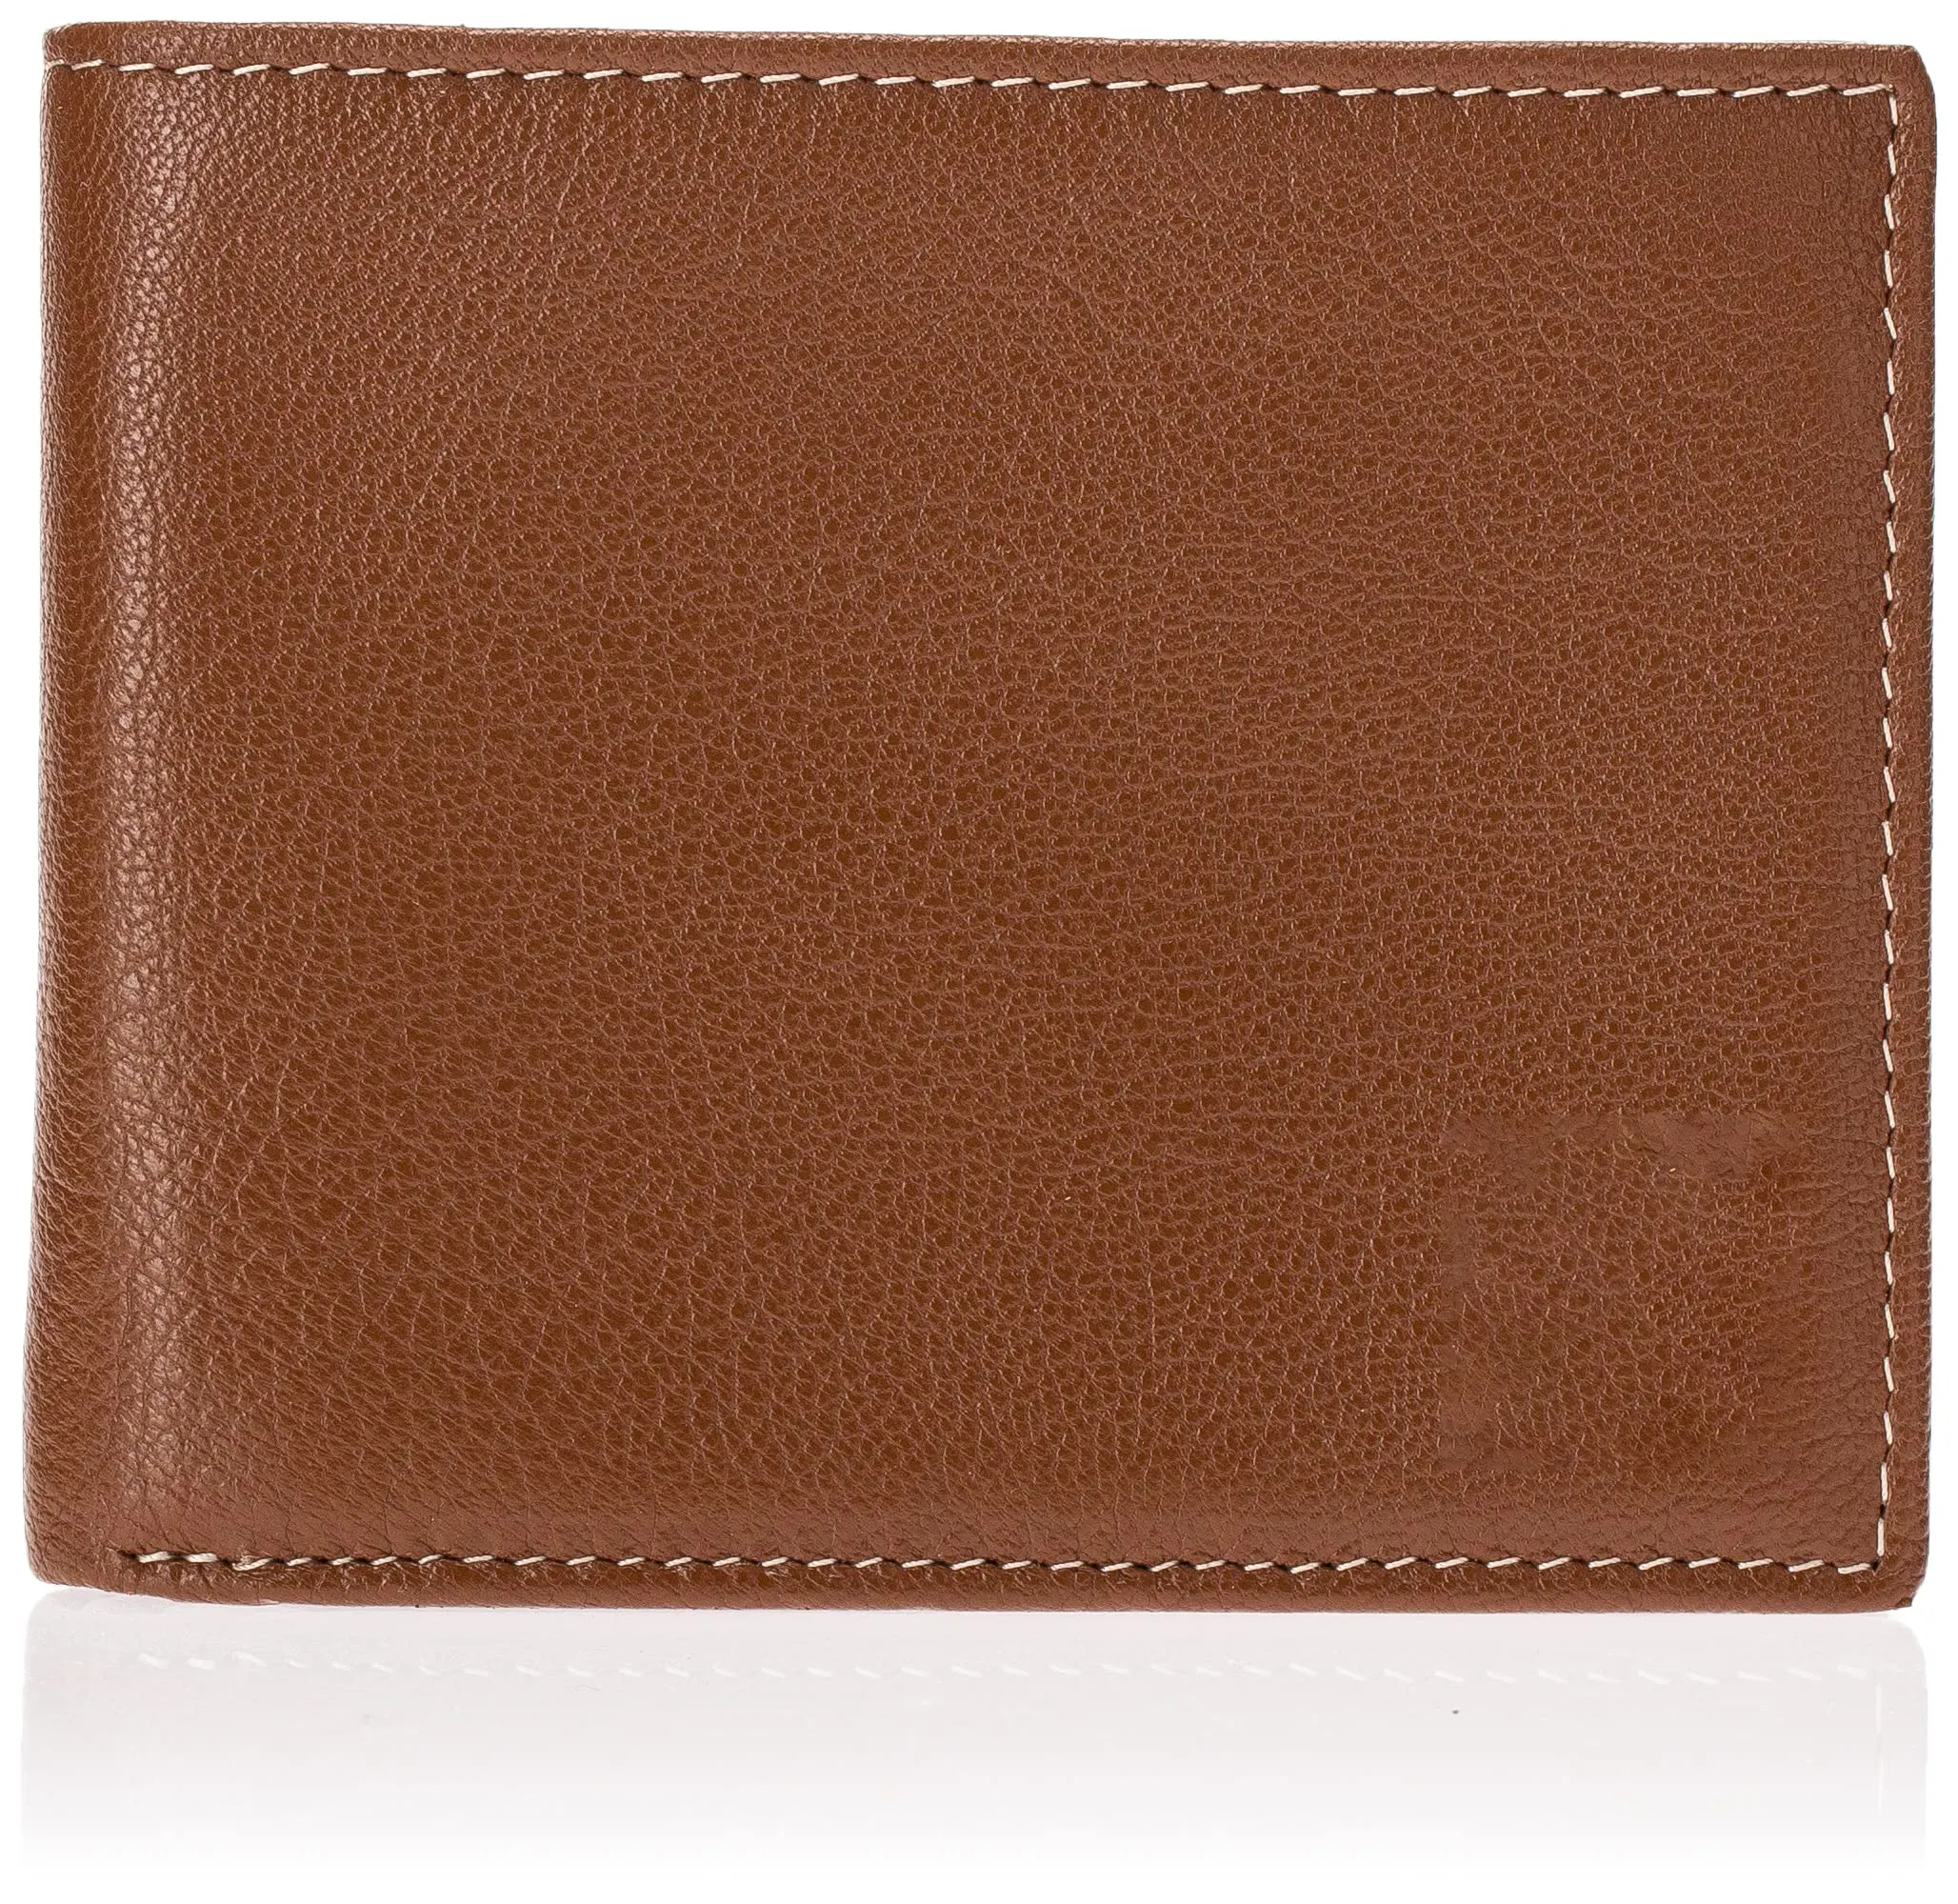 Portefeuille personnalisé en cuir véritable pour hommes, léger et portable, avec poche à rabat jointe